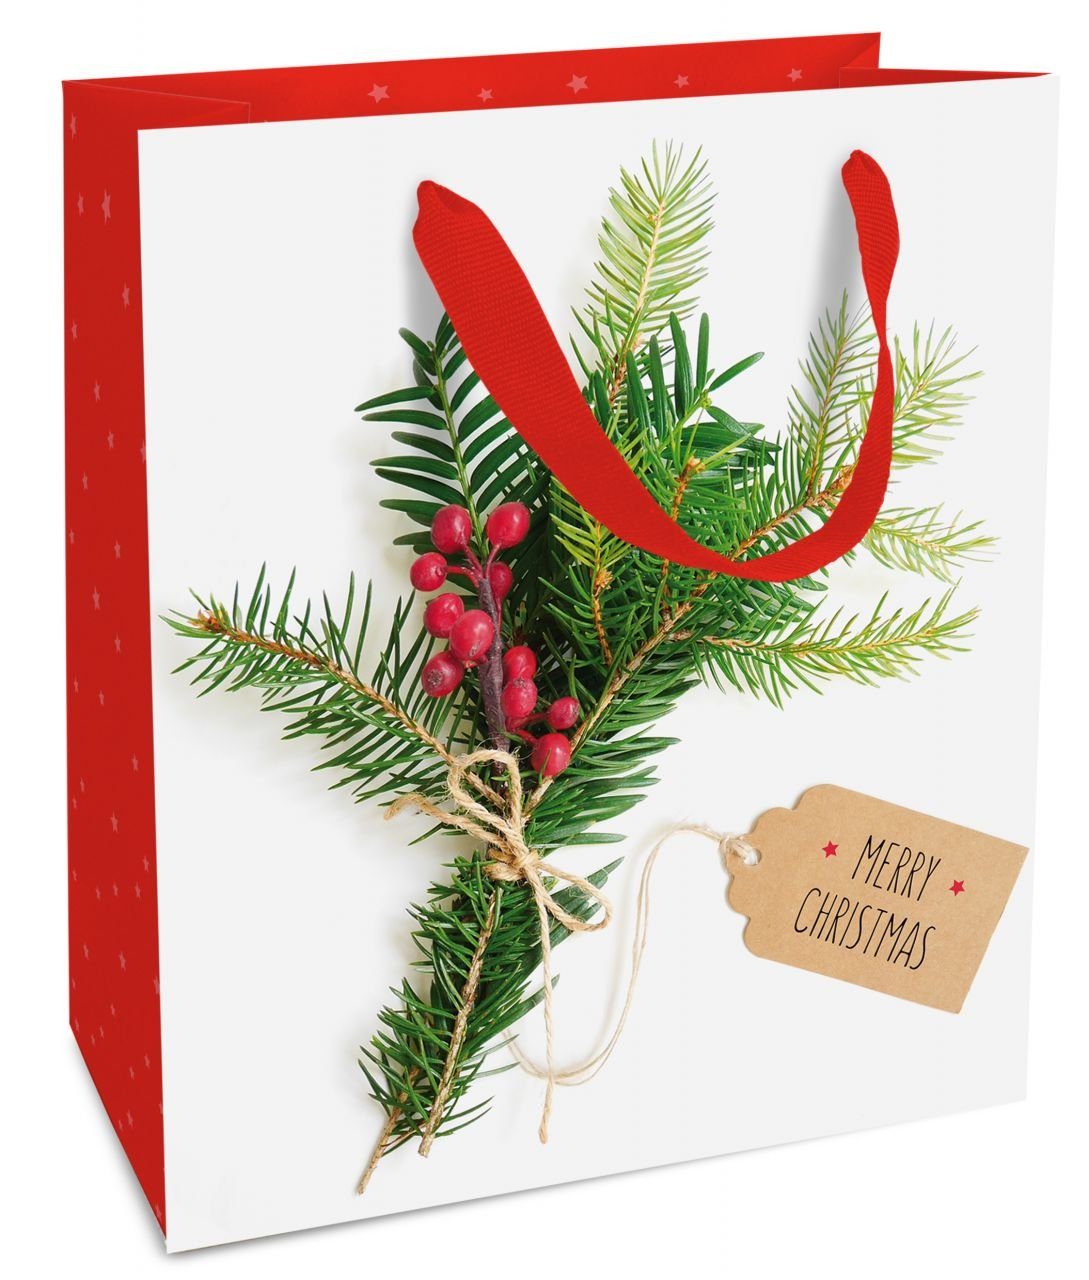 Weihnachtsgruß Geschenkpapier & Atelier Geschenktragetasche Braun+Company Company Braun